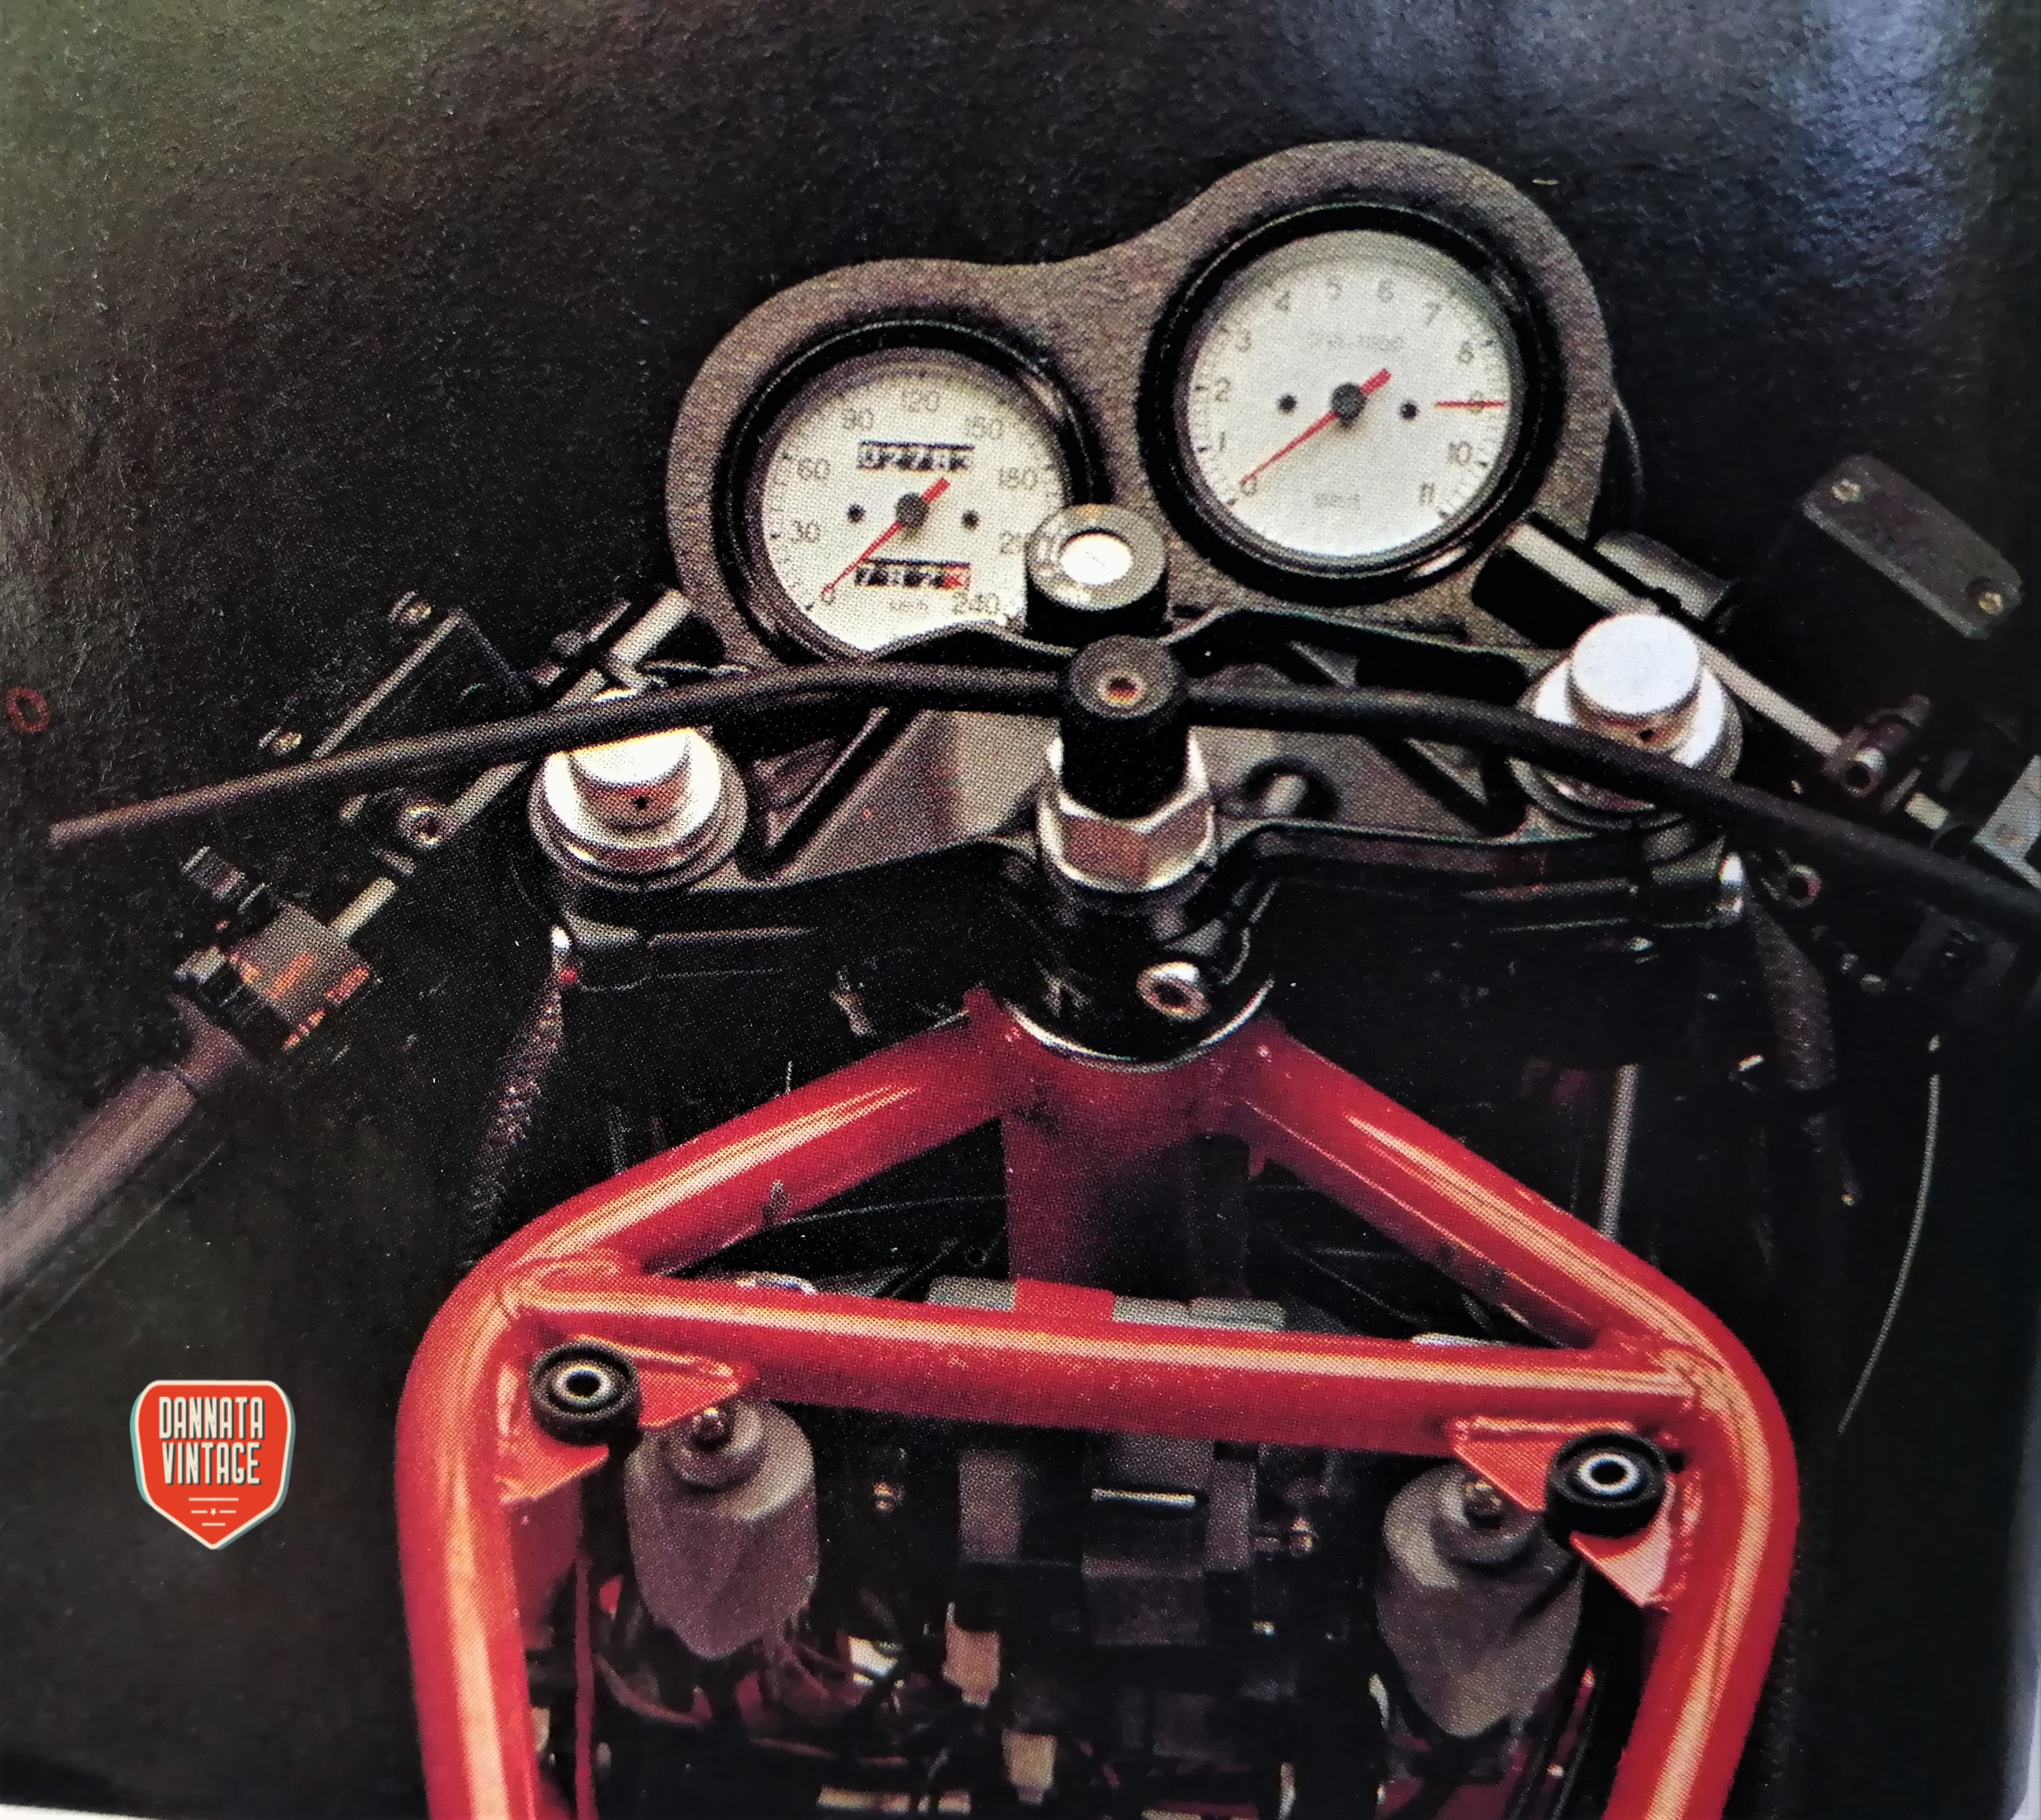 Ducati 750 Laguna Seca